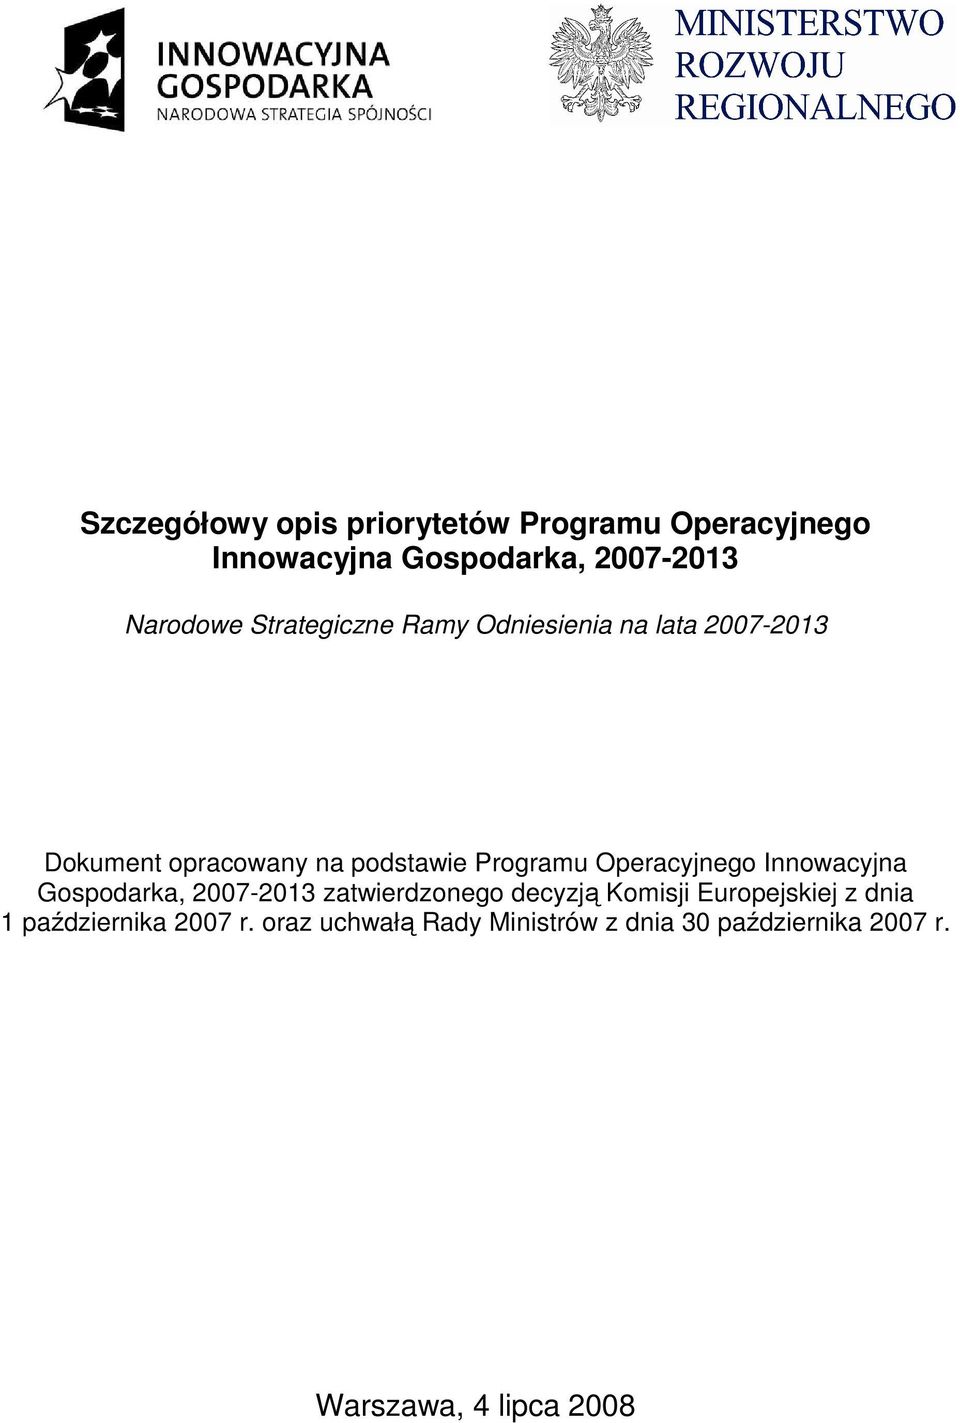 Operacyjnego Innowacyjna Gospodarka, 2007-2013 zatwierdzonego decyzją Komisji Europejskiej z